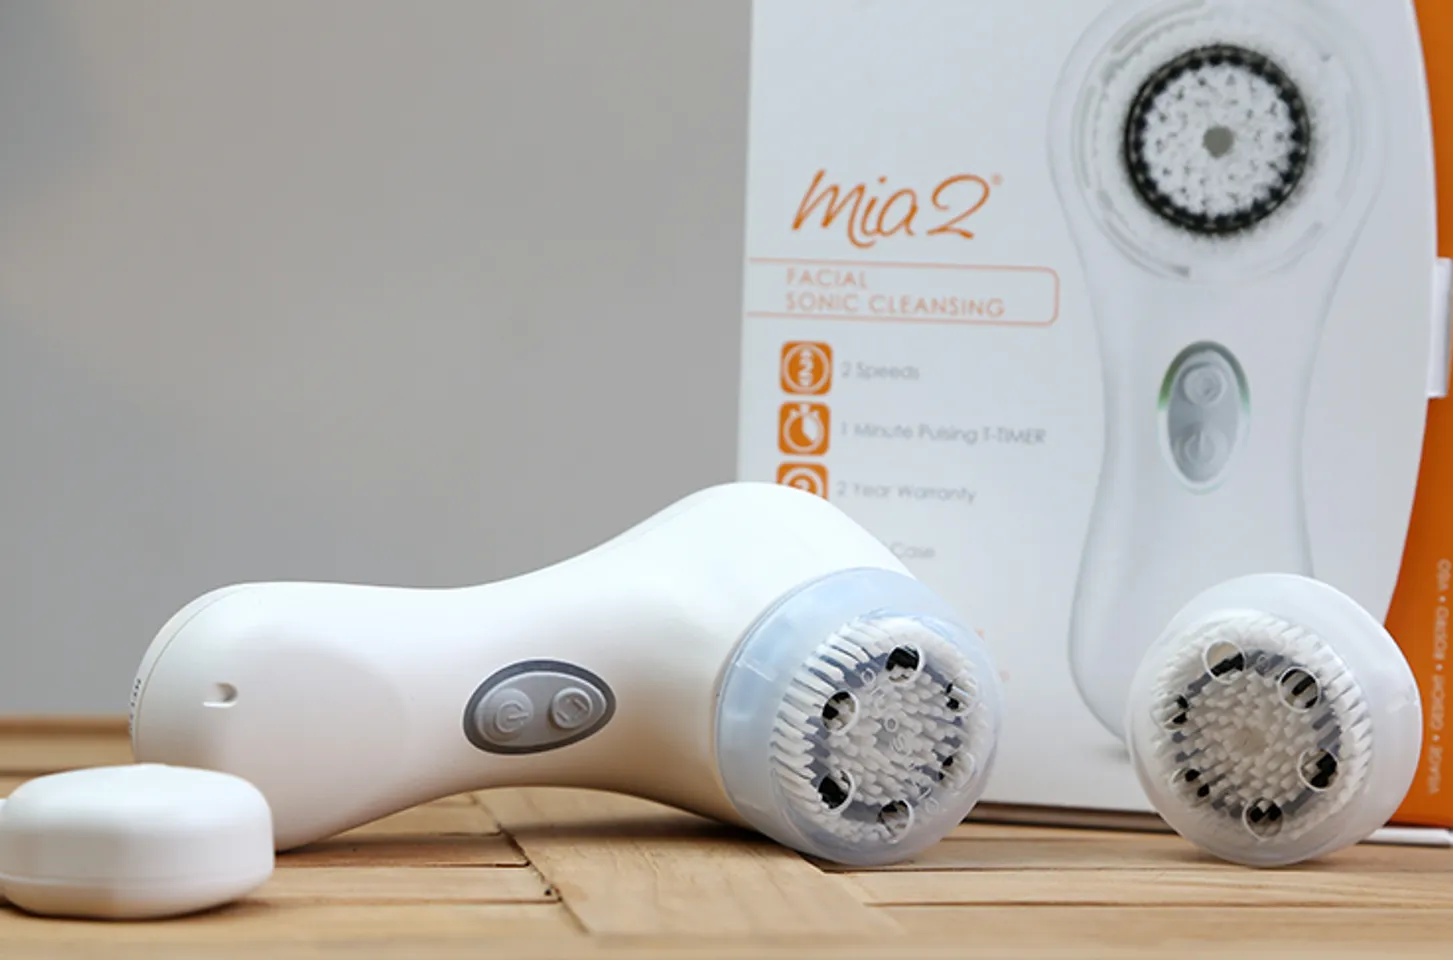 Máy rửa mặt Clarisonic Mia 2 sử dụng công nghệ tiên tiến đã được cấp bằng sáng chế với nhiều công dụng tuyệt vời